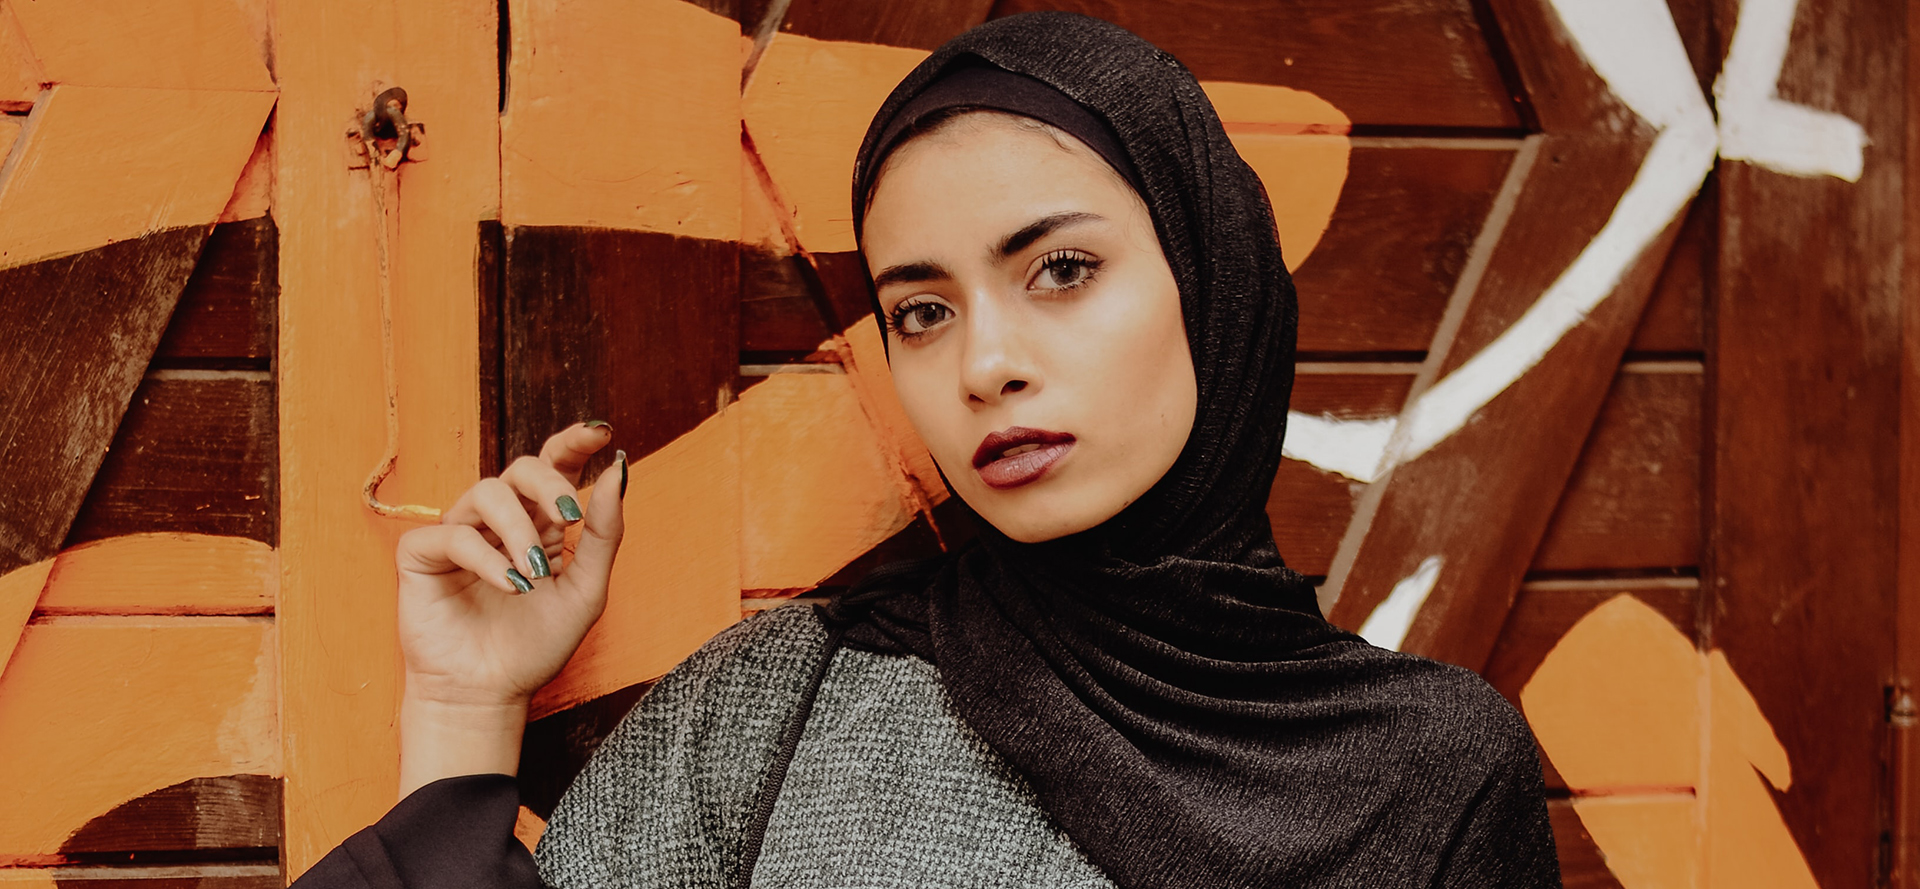 Donna araba con un foulard nero.